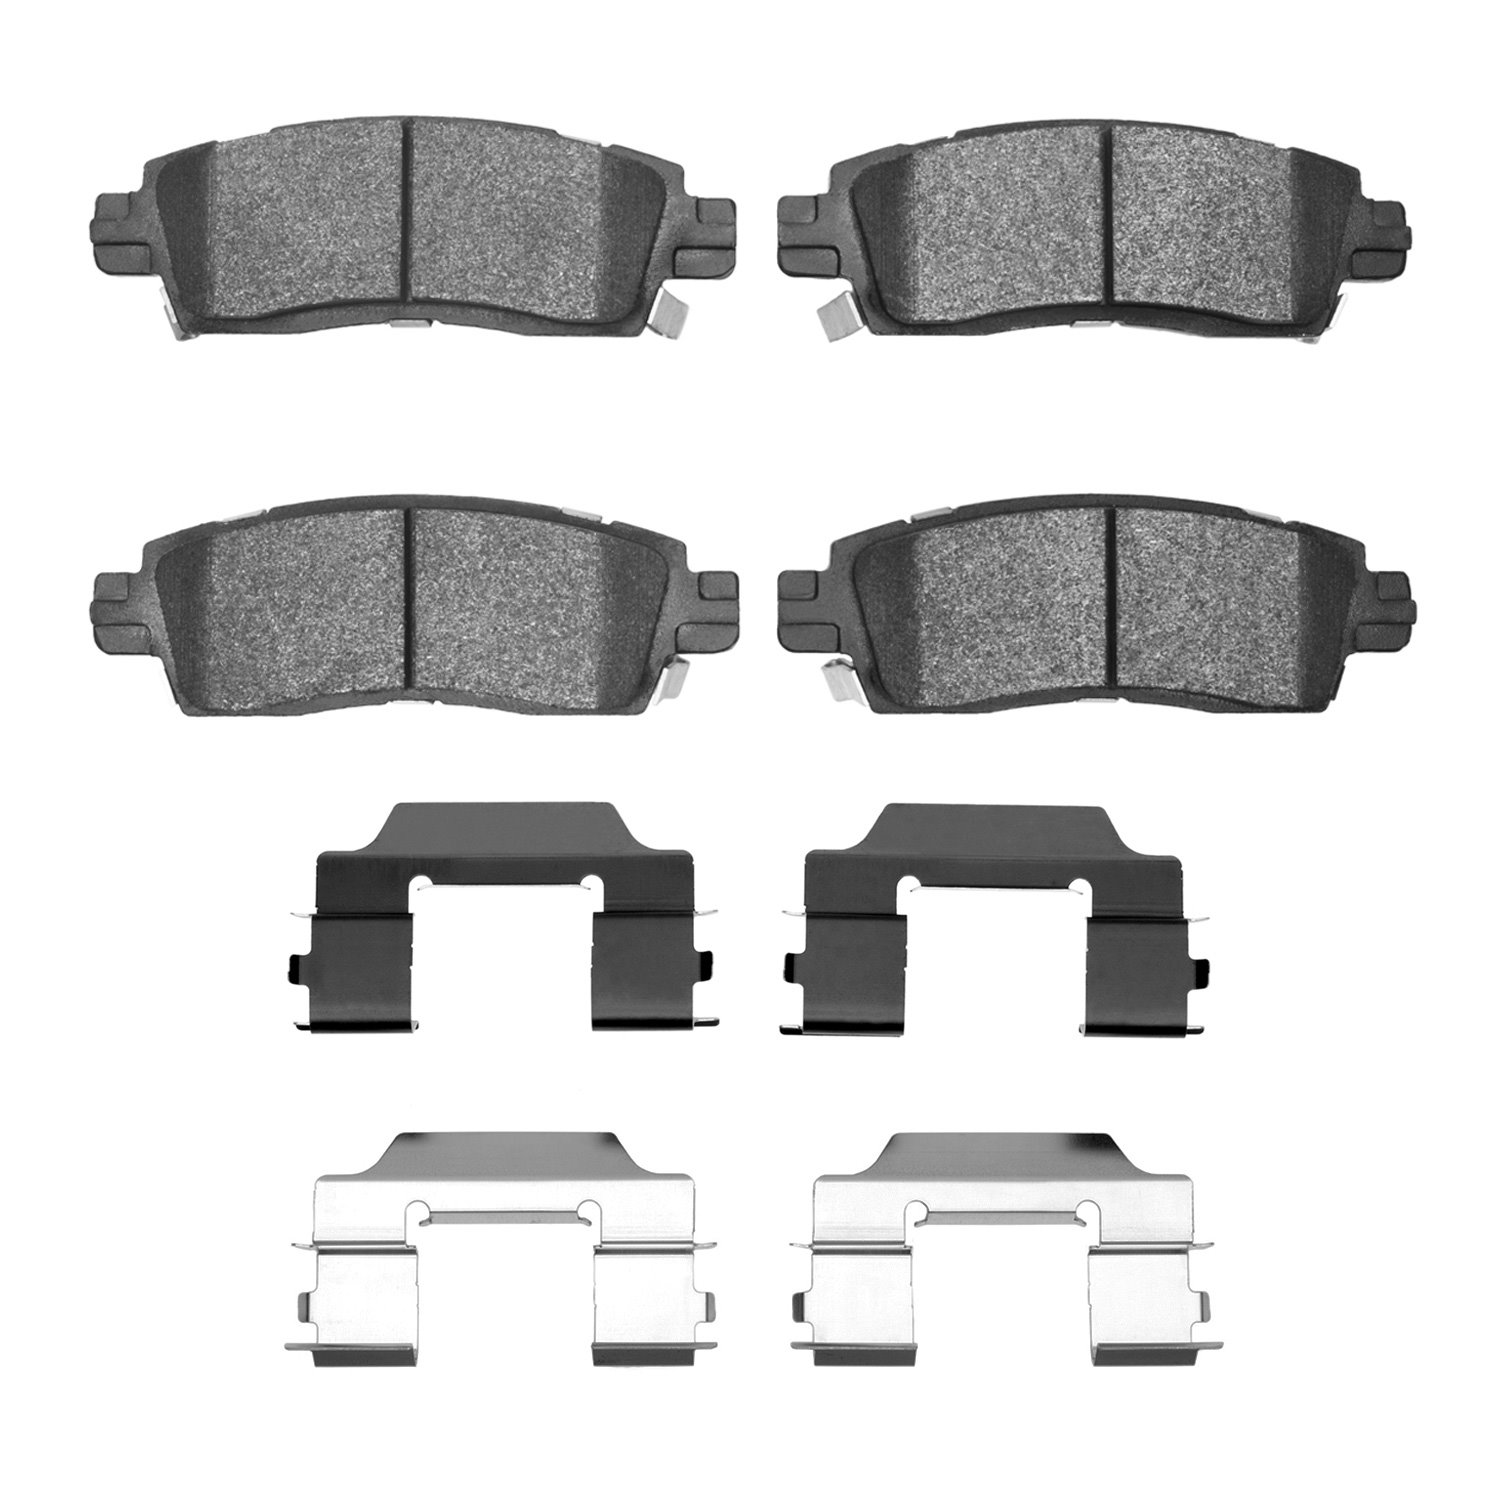 Euro Ceramic Brake Pads & Hardware Kit, 2002-2019 GM, Position: Rear